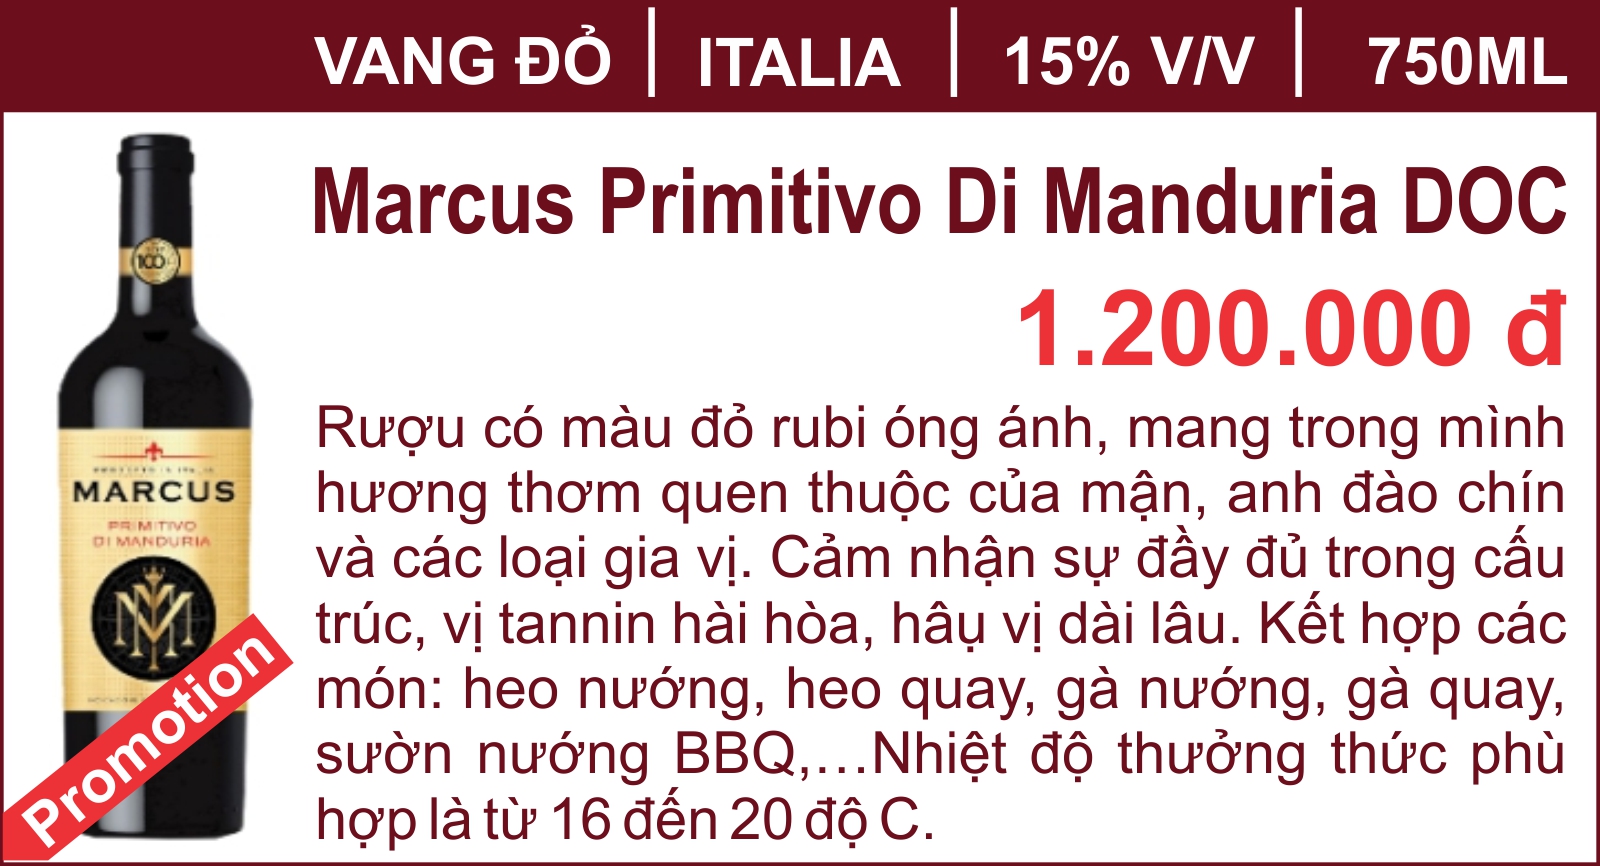 Marcus Primitivo Di Manduria DOC